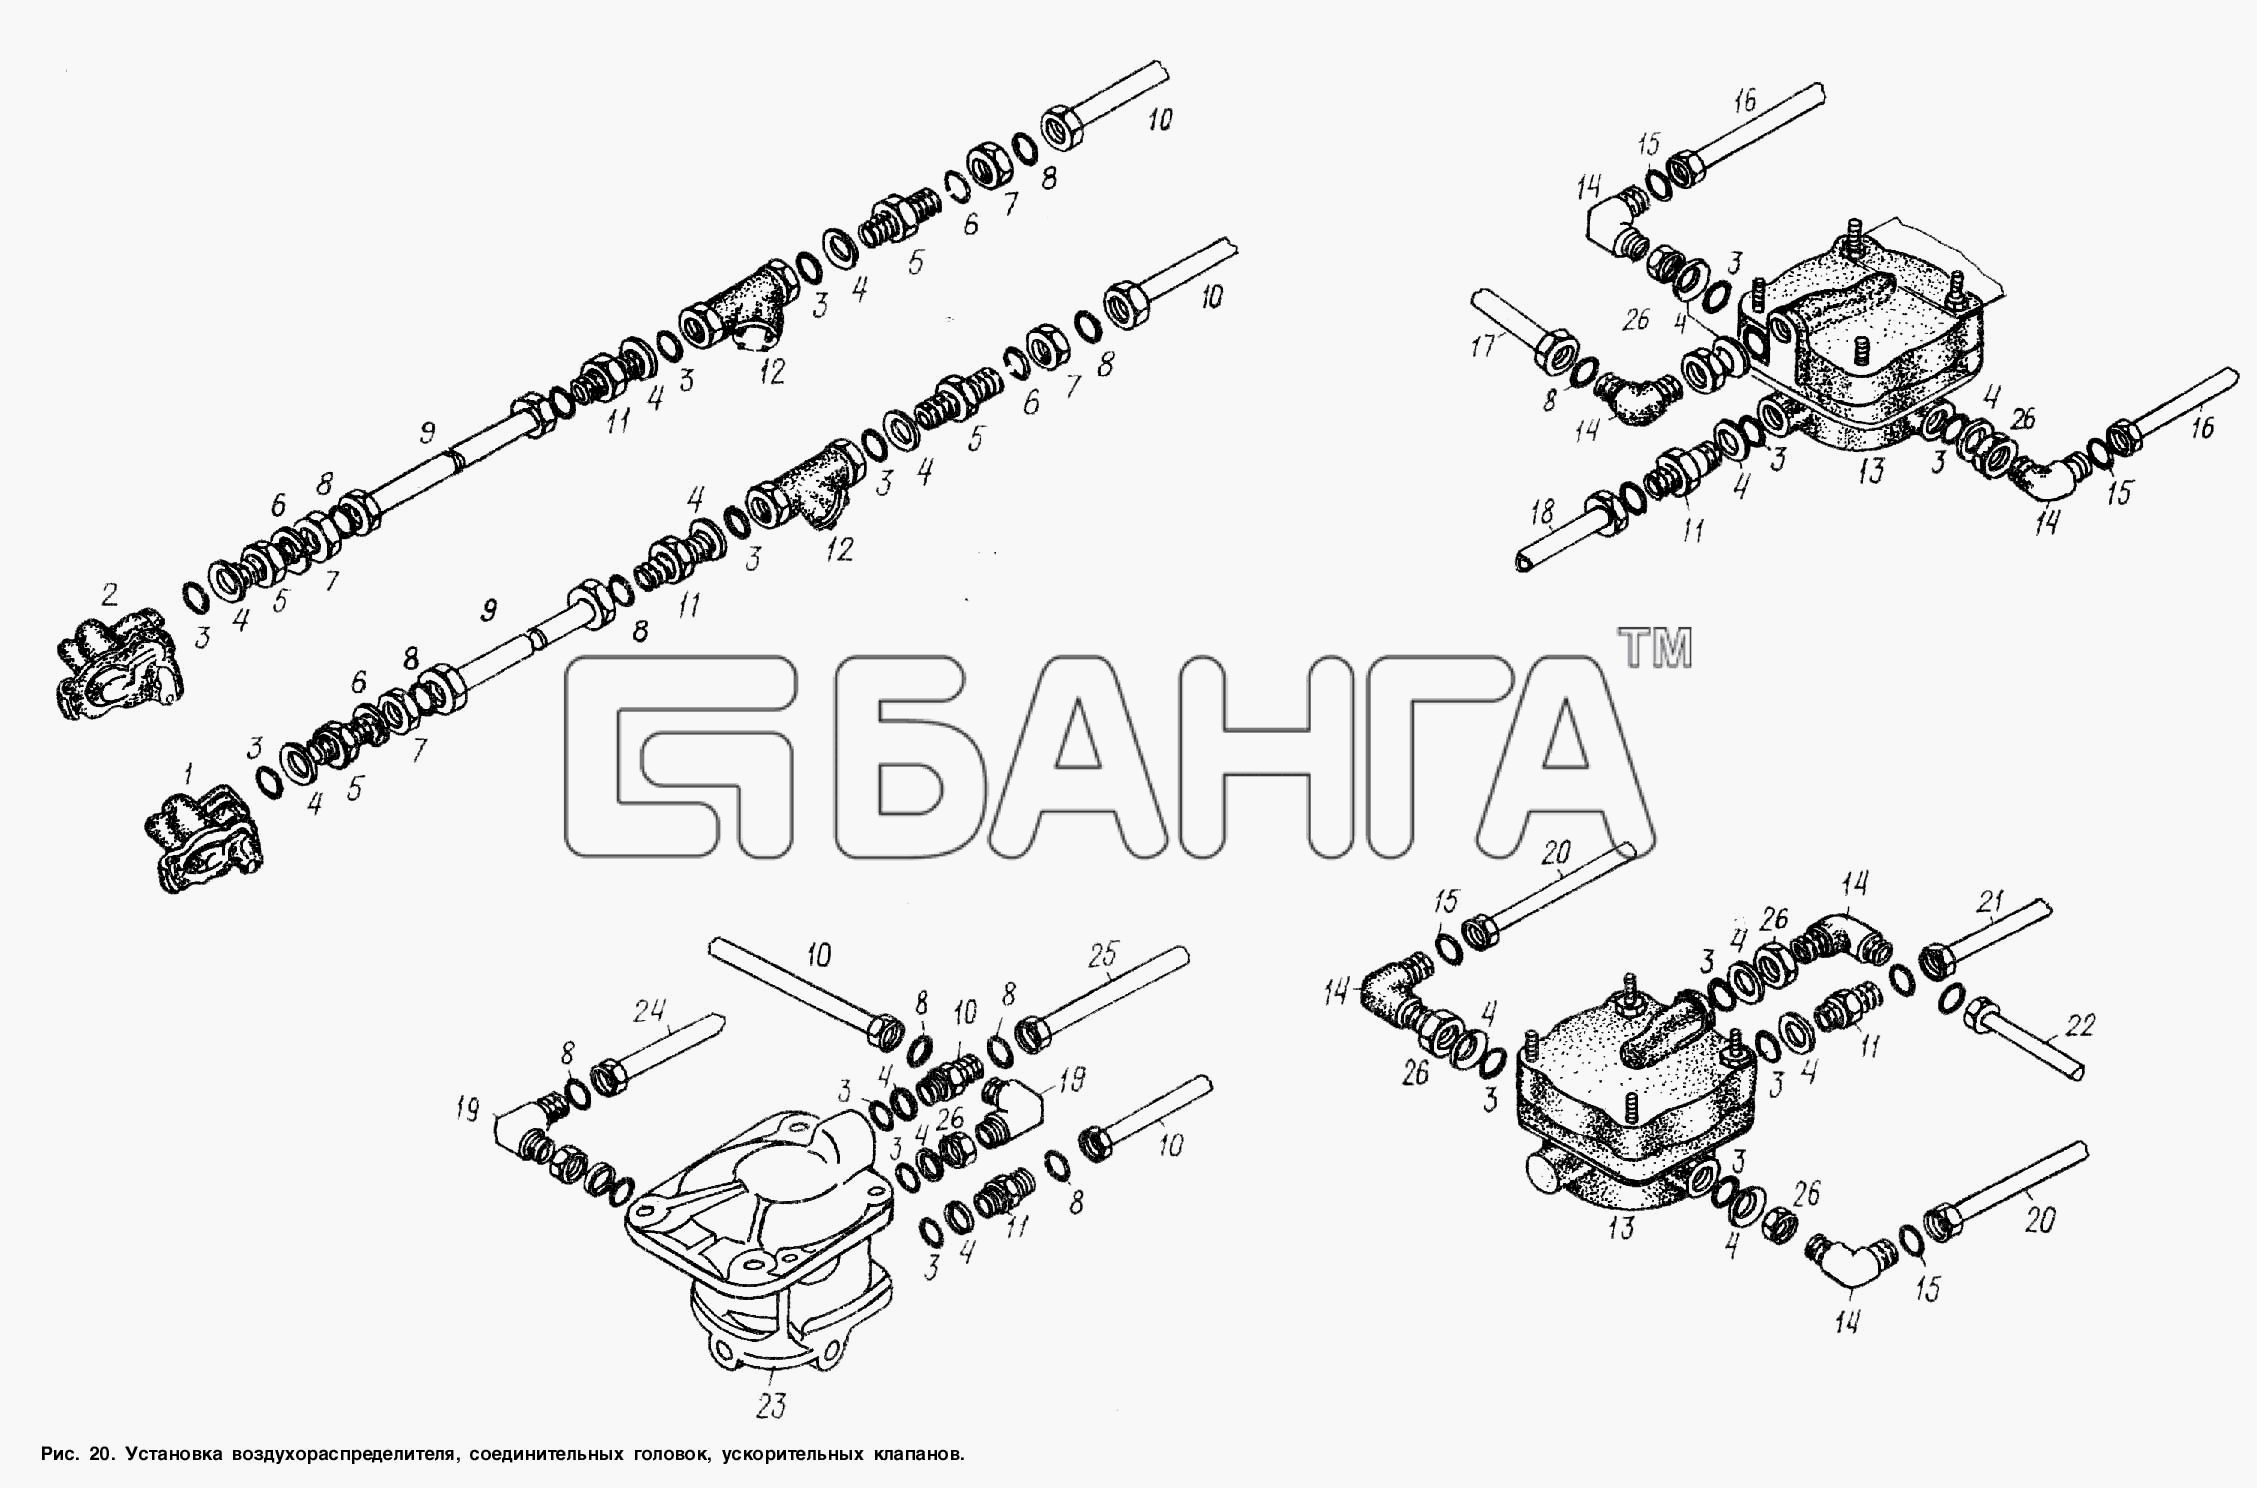 МАЗ МАЗ-938662 Схема Установка воздухораспределителя banga.ua